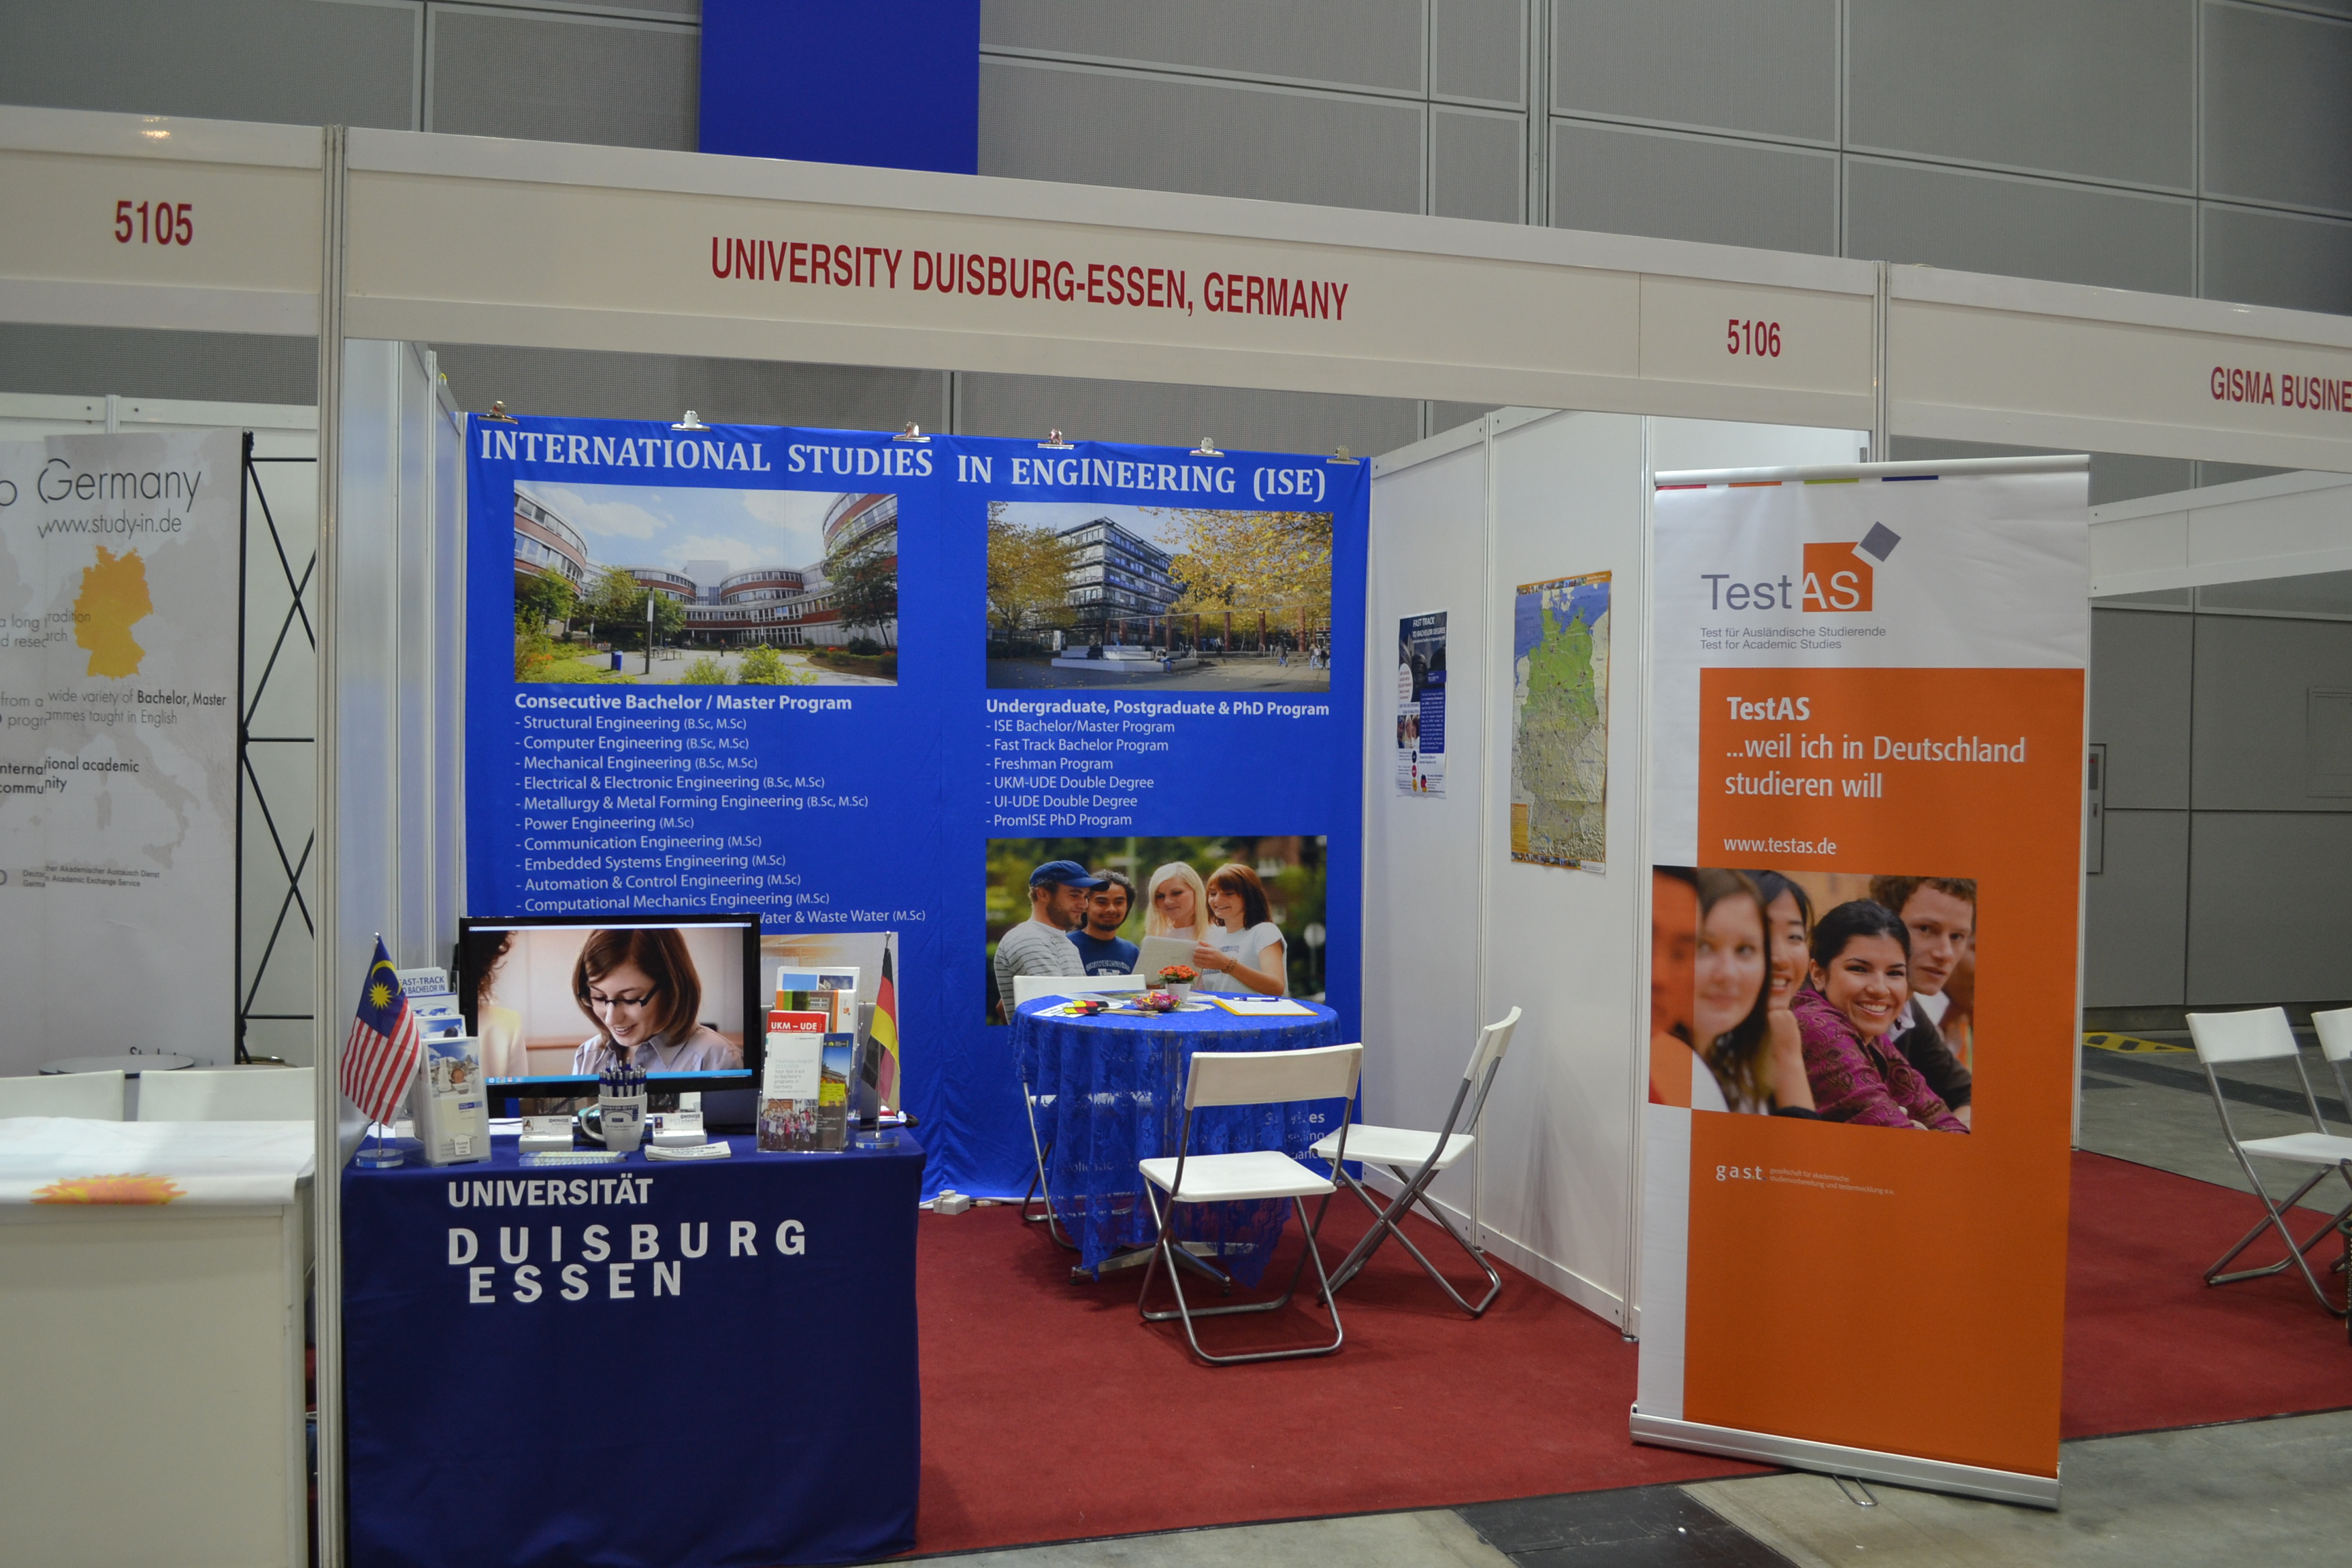 FST undergraduate - Universiti Kebangsaan Malaysia